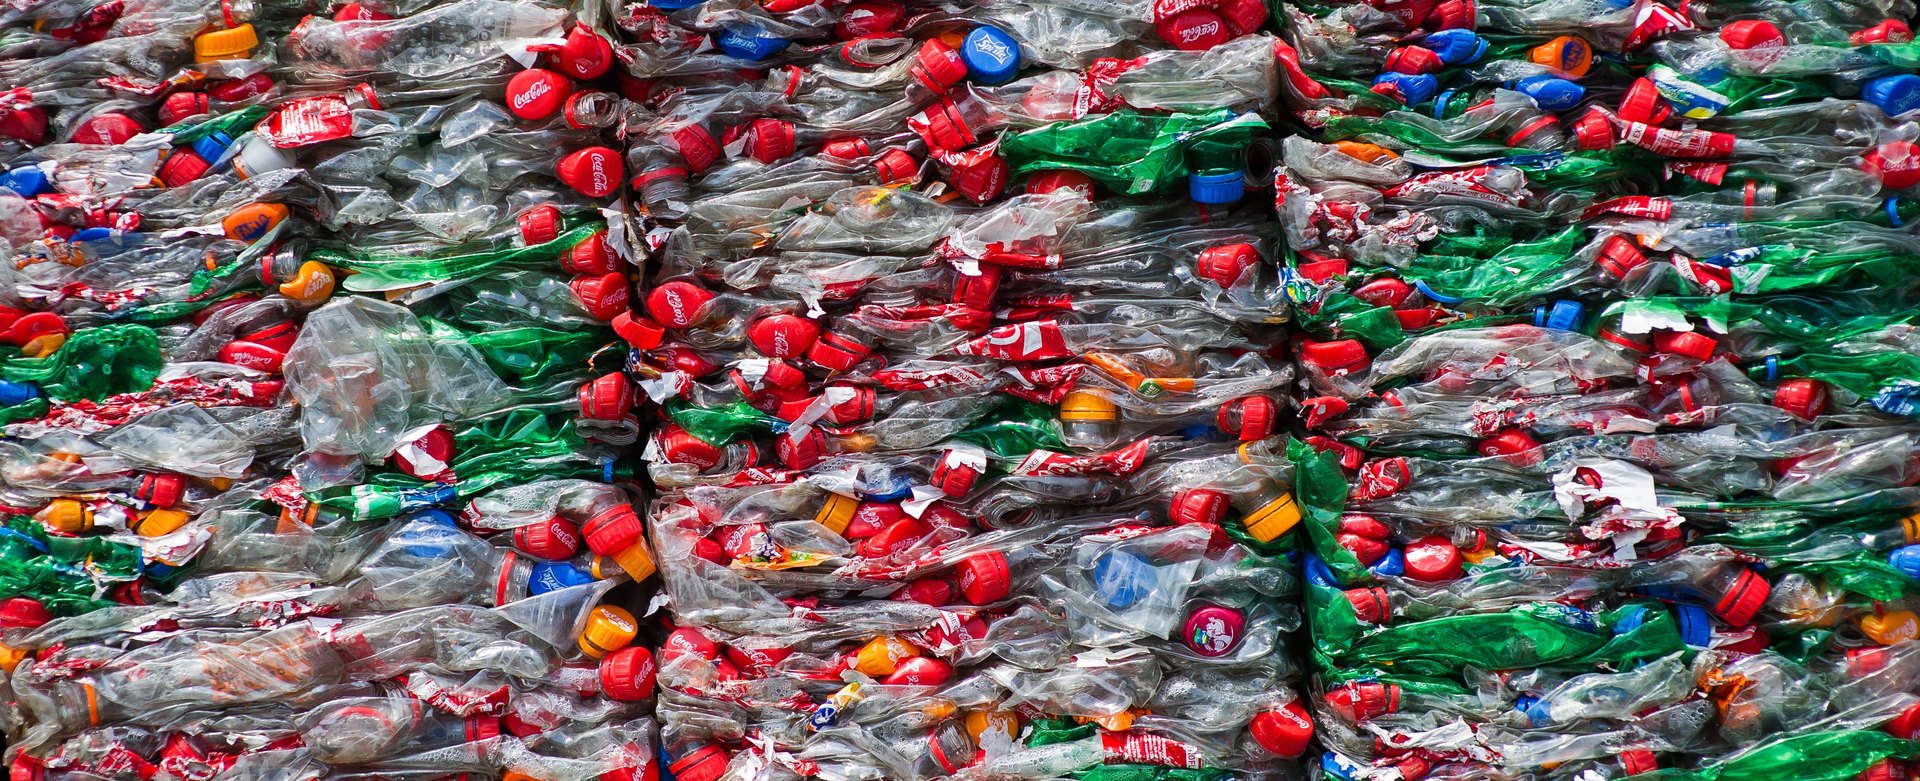 Unzählige PET-Flaschen werden im Recycling-Prozess zusammengepresst und gestapelt.